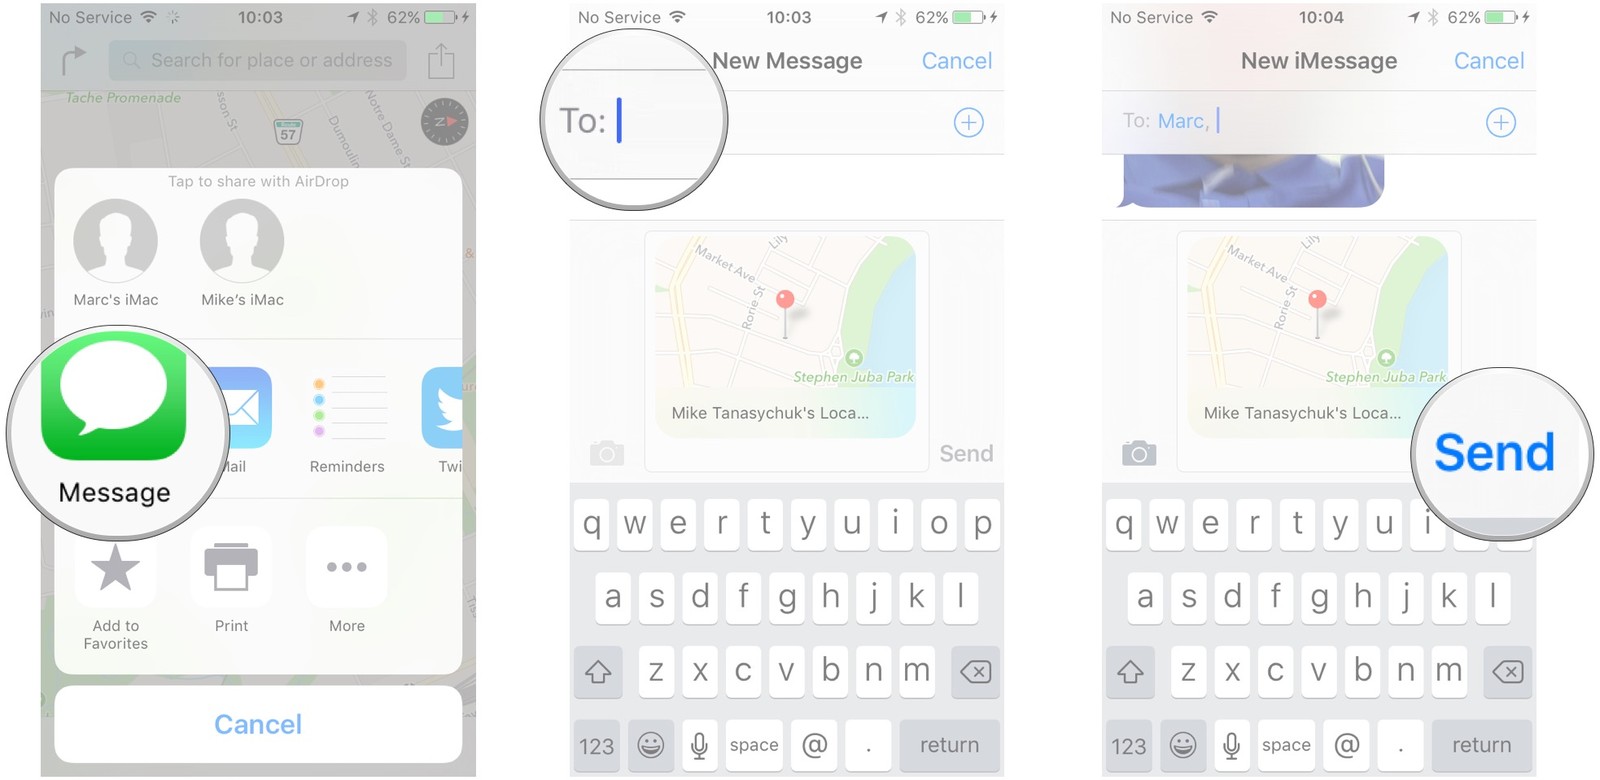 Как пользоваться Картами на iPhone и iPad - Поделиться местоположением в Сообщениях